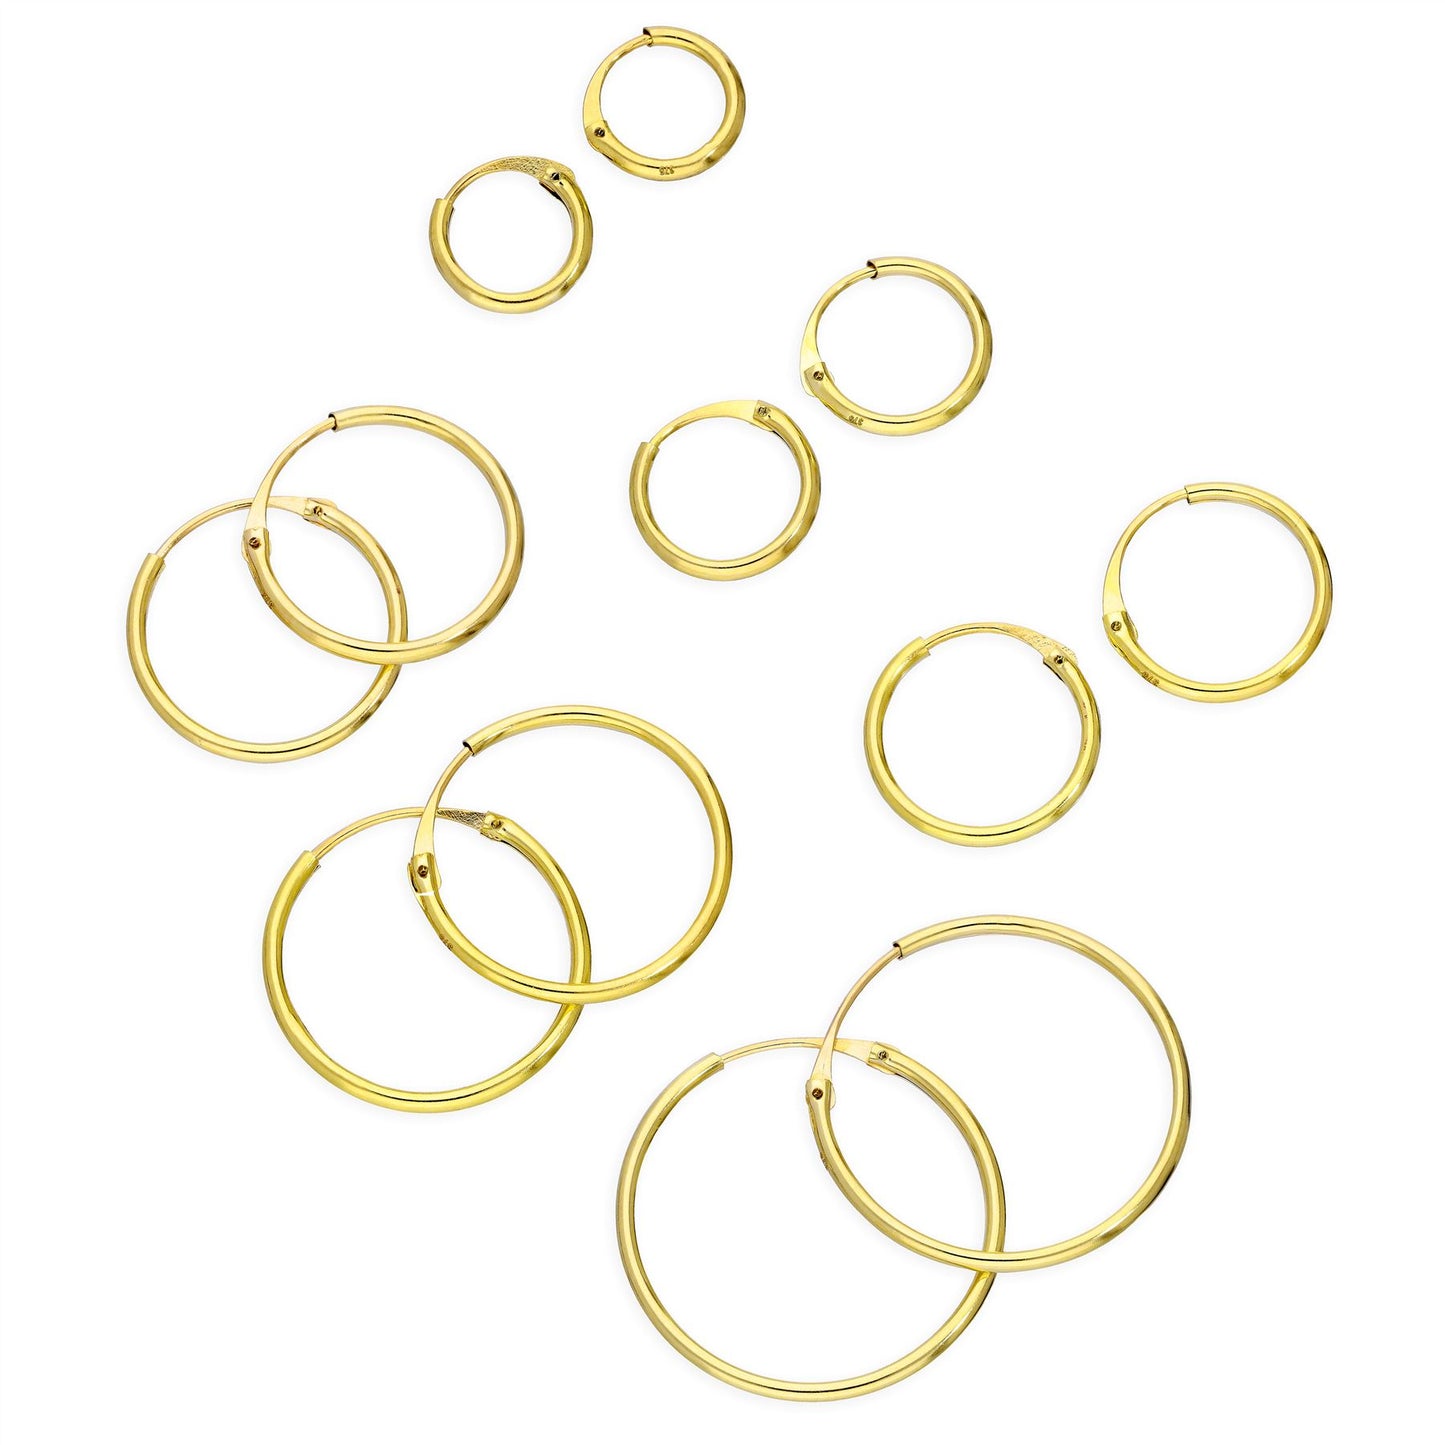 9ct Gold 1.2mm Tube Hoop Earrings 8mm - 20mm